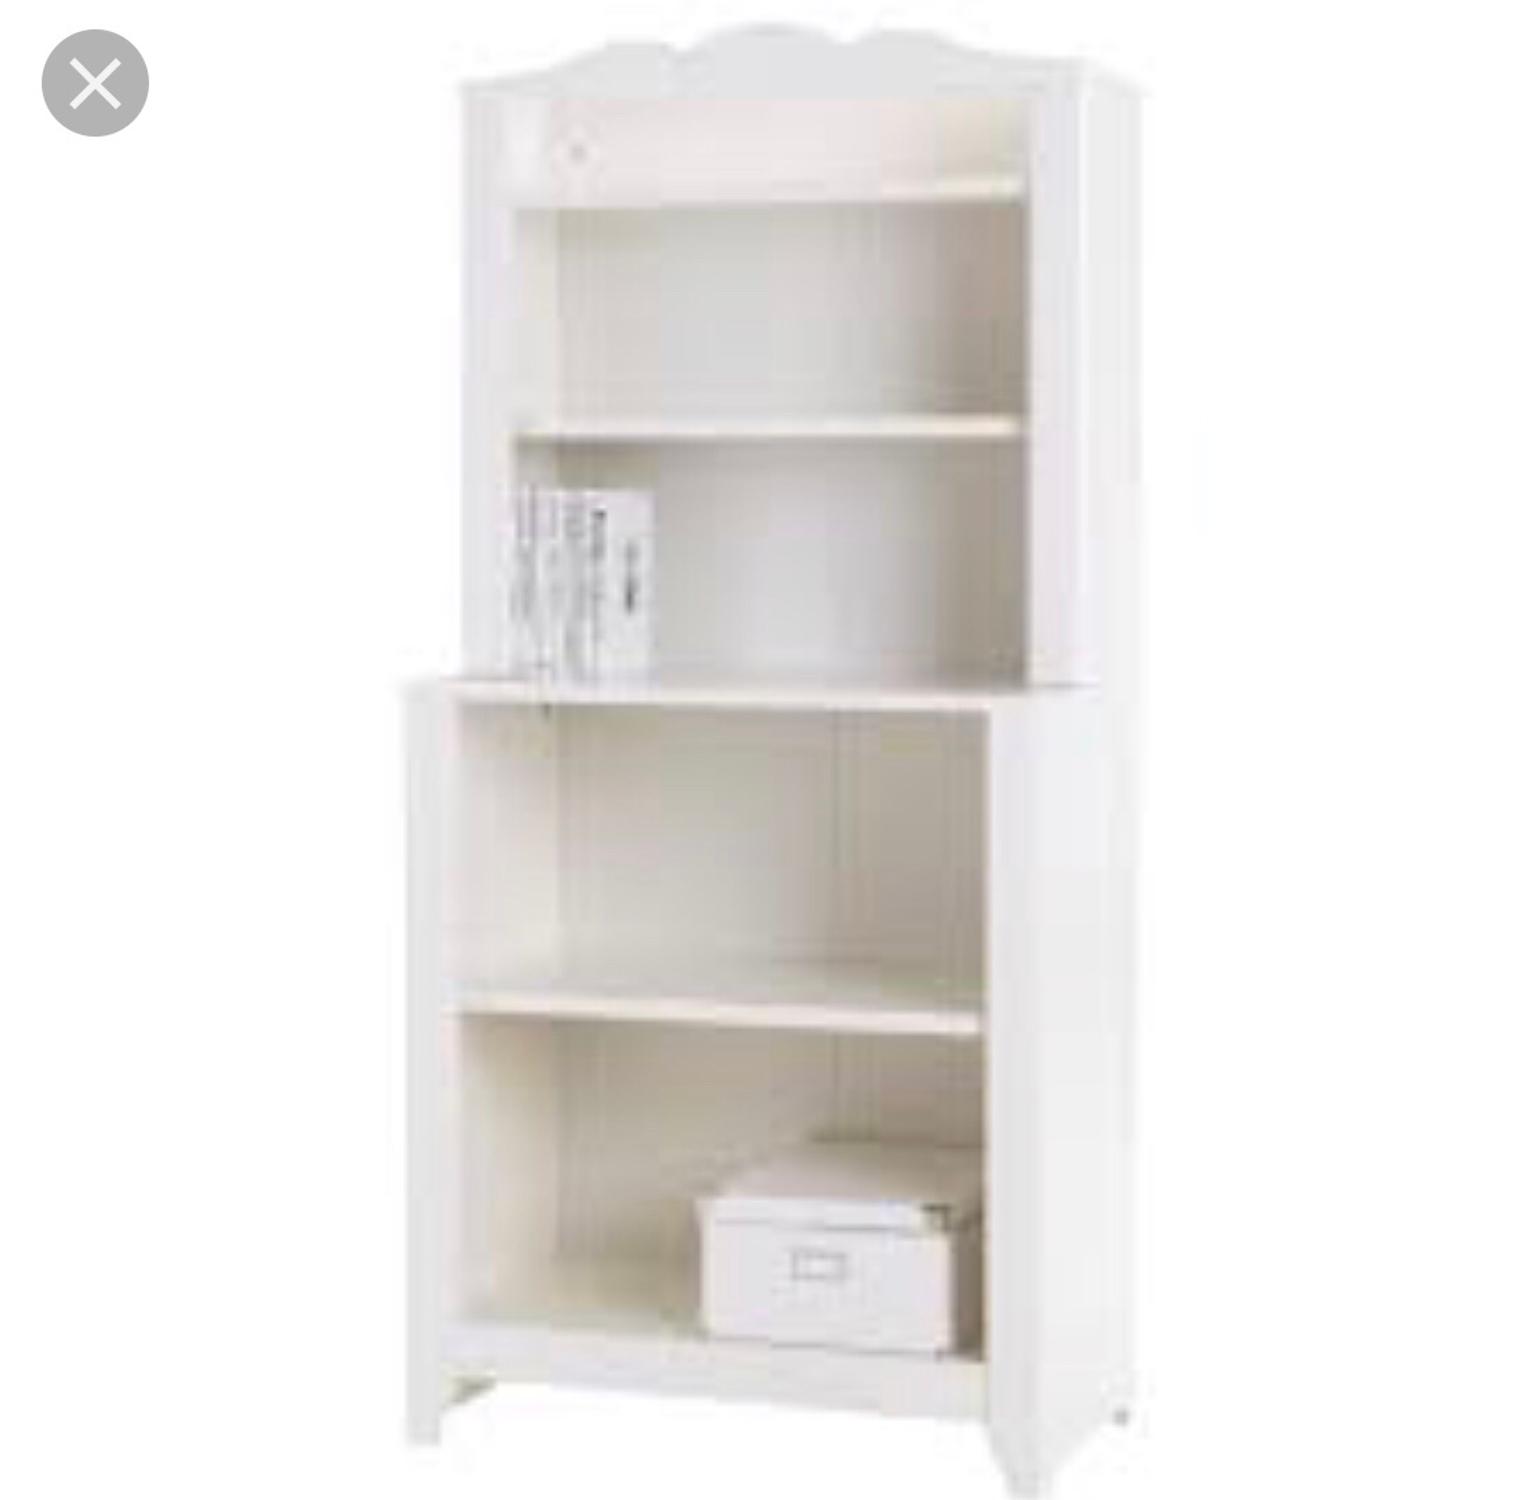 Ikea Children Bookshelf In Sw17 London For 35 00 For Sale Shpock